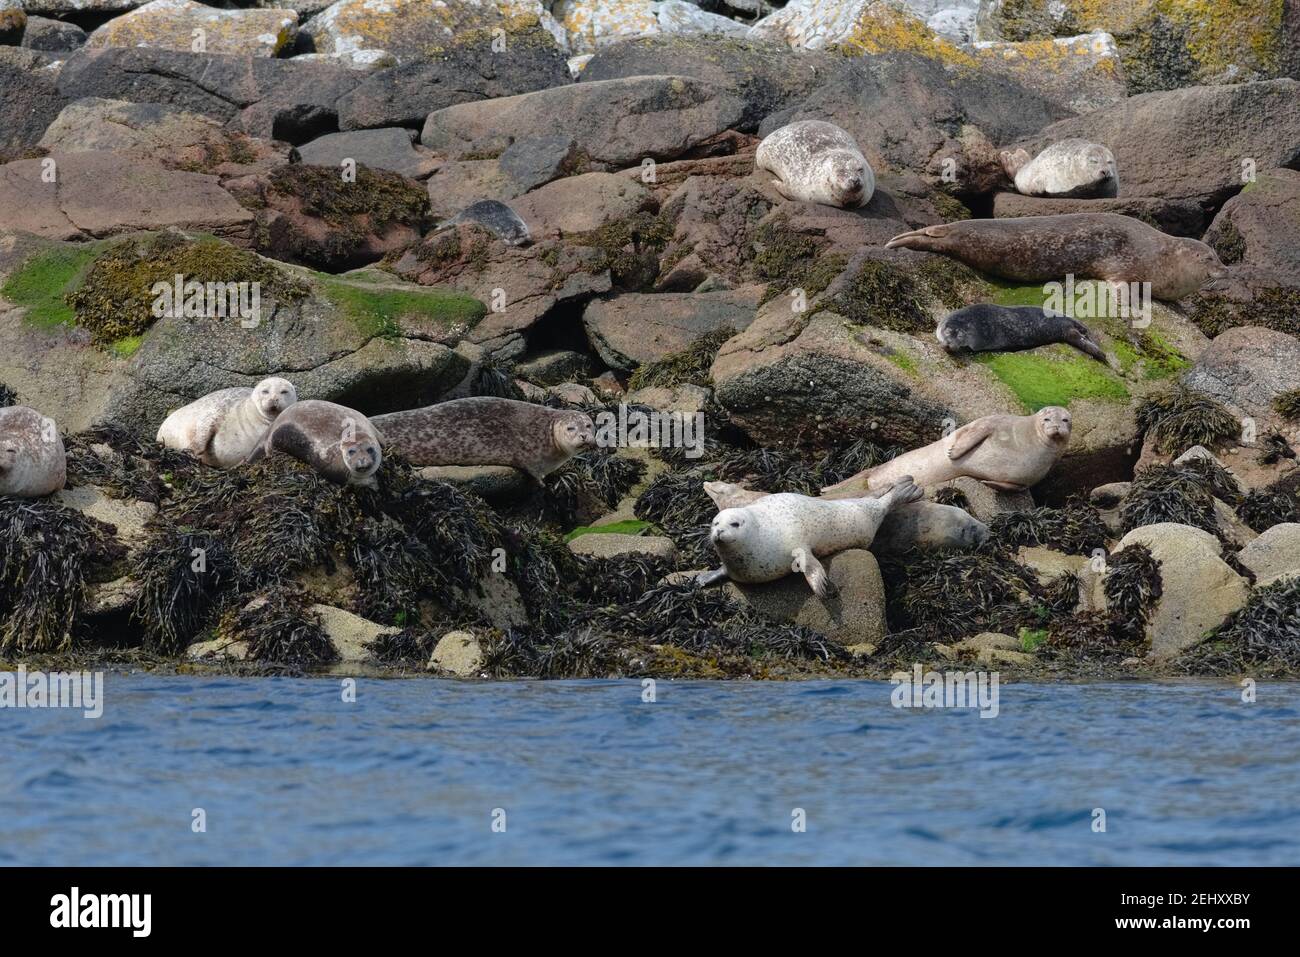 Les phoques gras se regroupent tout en bronzant sur une île rocheuse de rochers. Faune écossaise intacte près des rives de l'île de raasay en été Banque D'Images